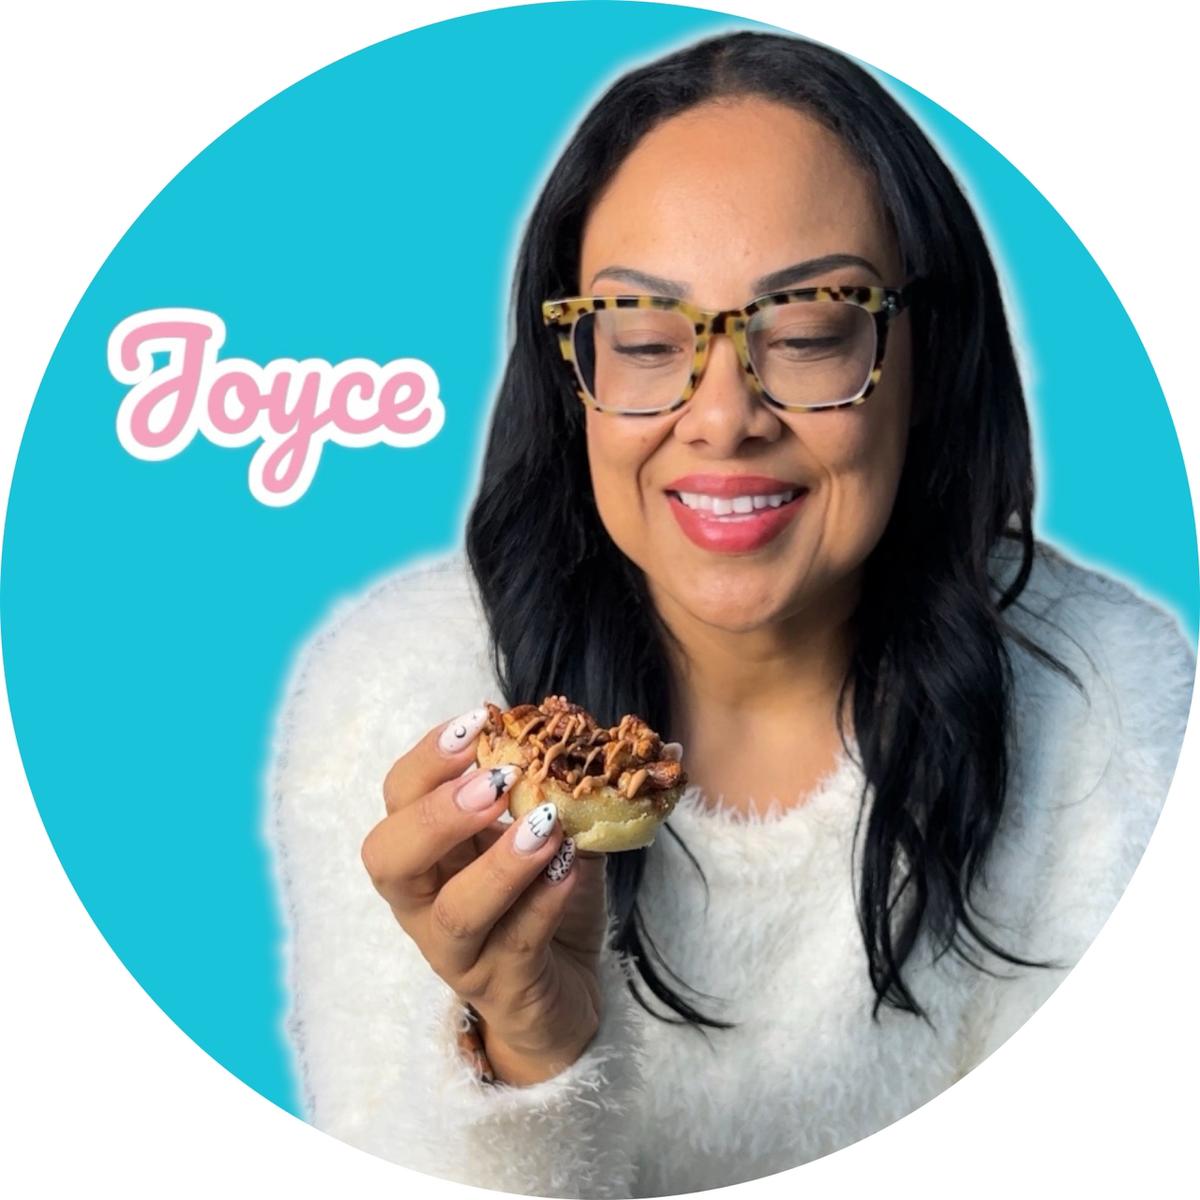 Joyce |Foodie's images